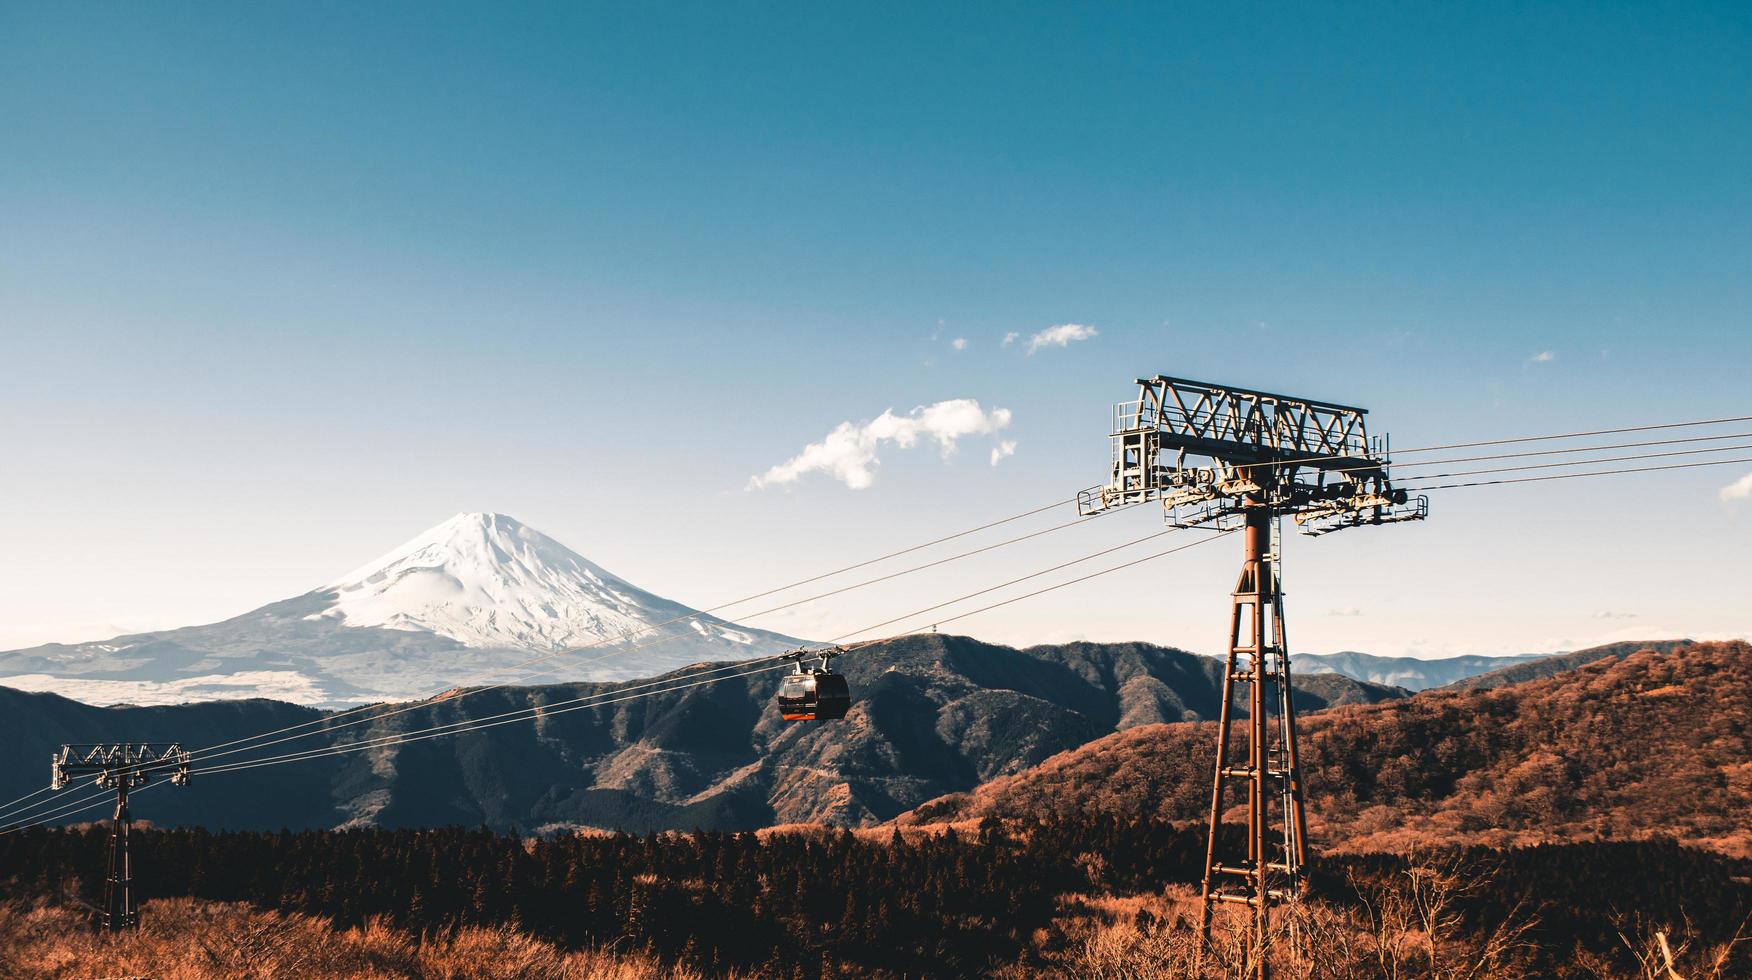 Beautiful Fuji mountain photo